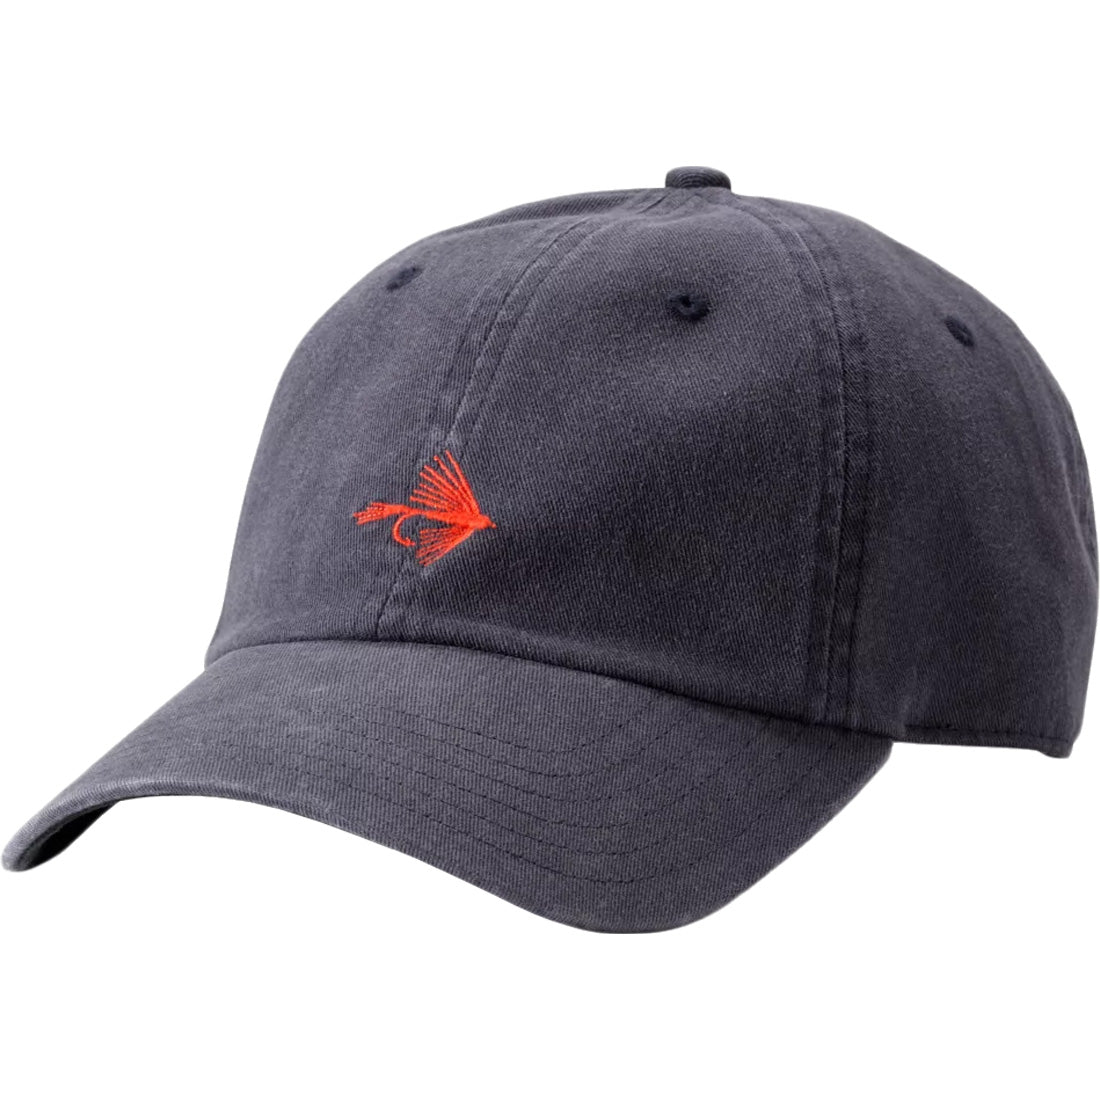 Orvis Men's Baseball Caps for sale